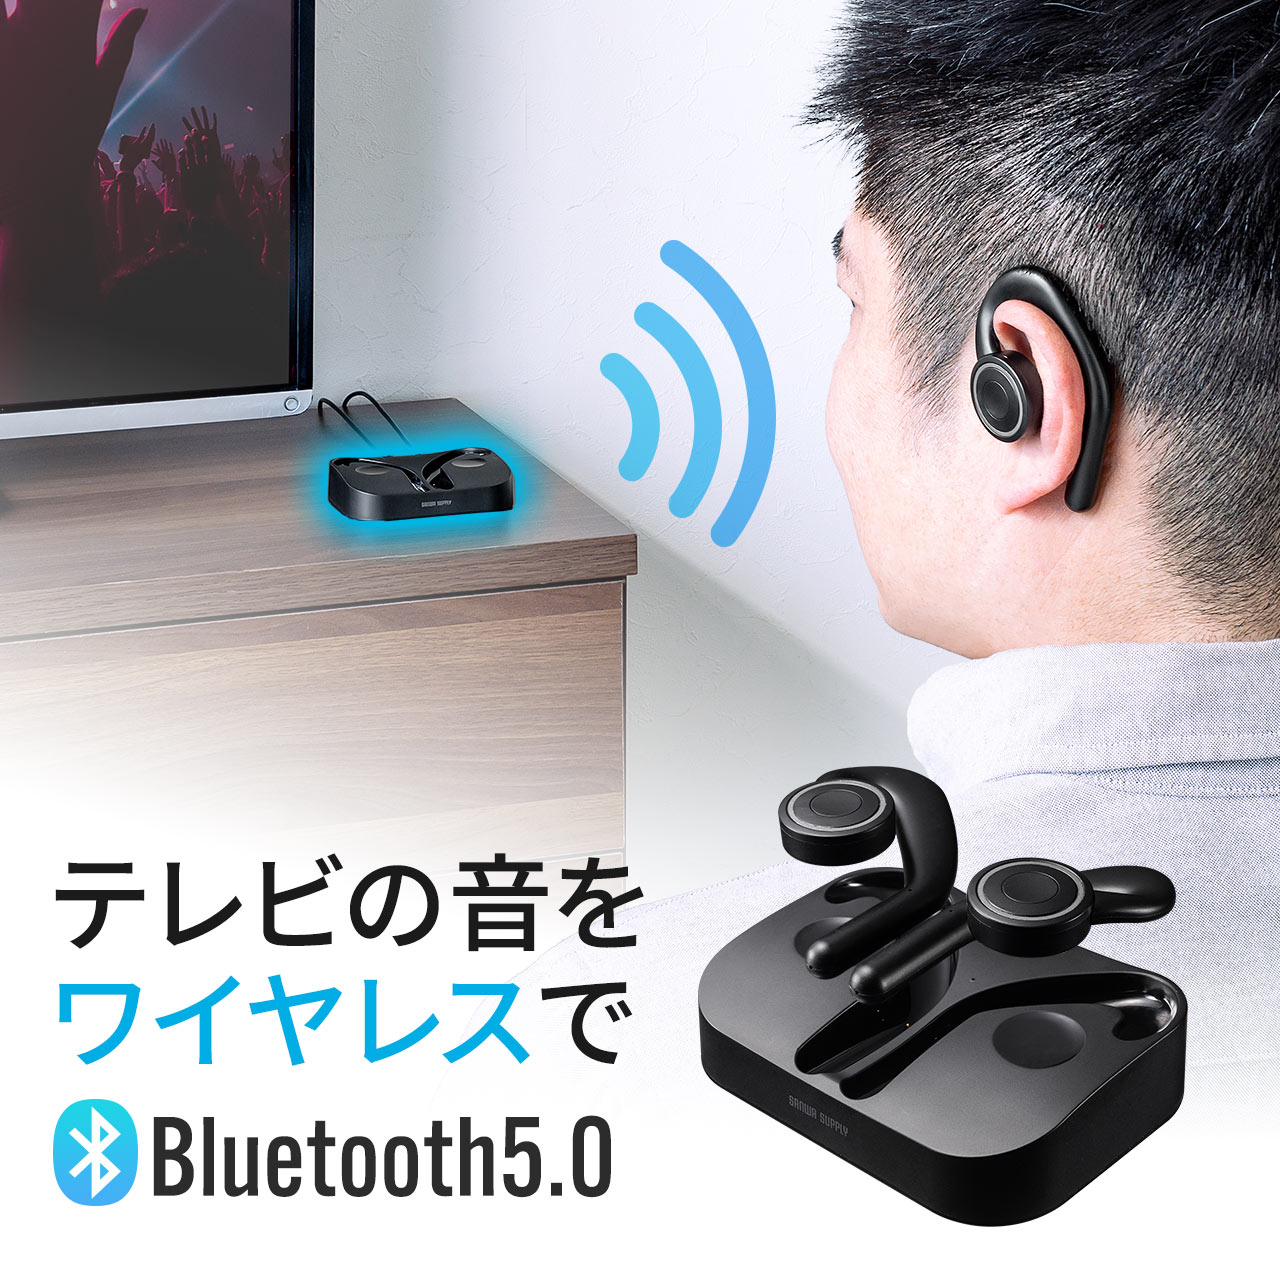 テレビ イヤホン Bluetooth ワイヤレス